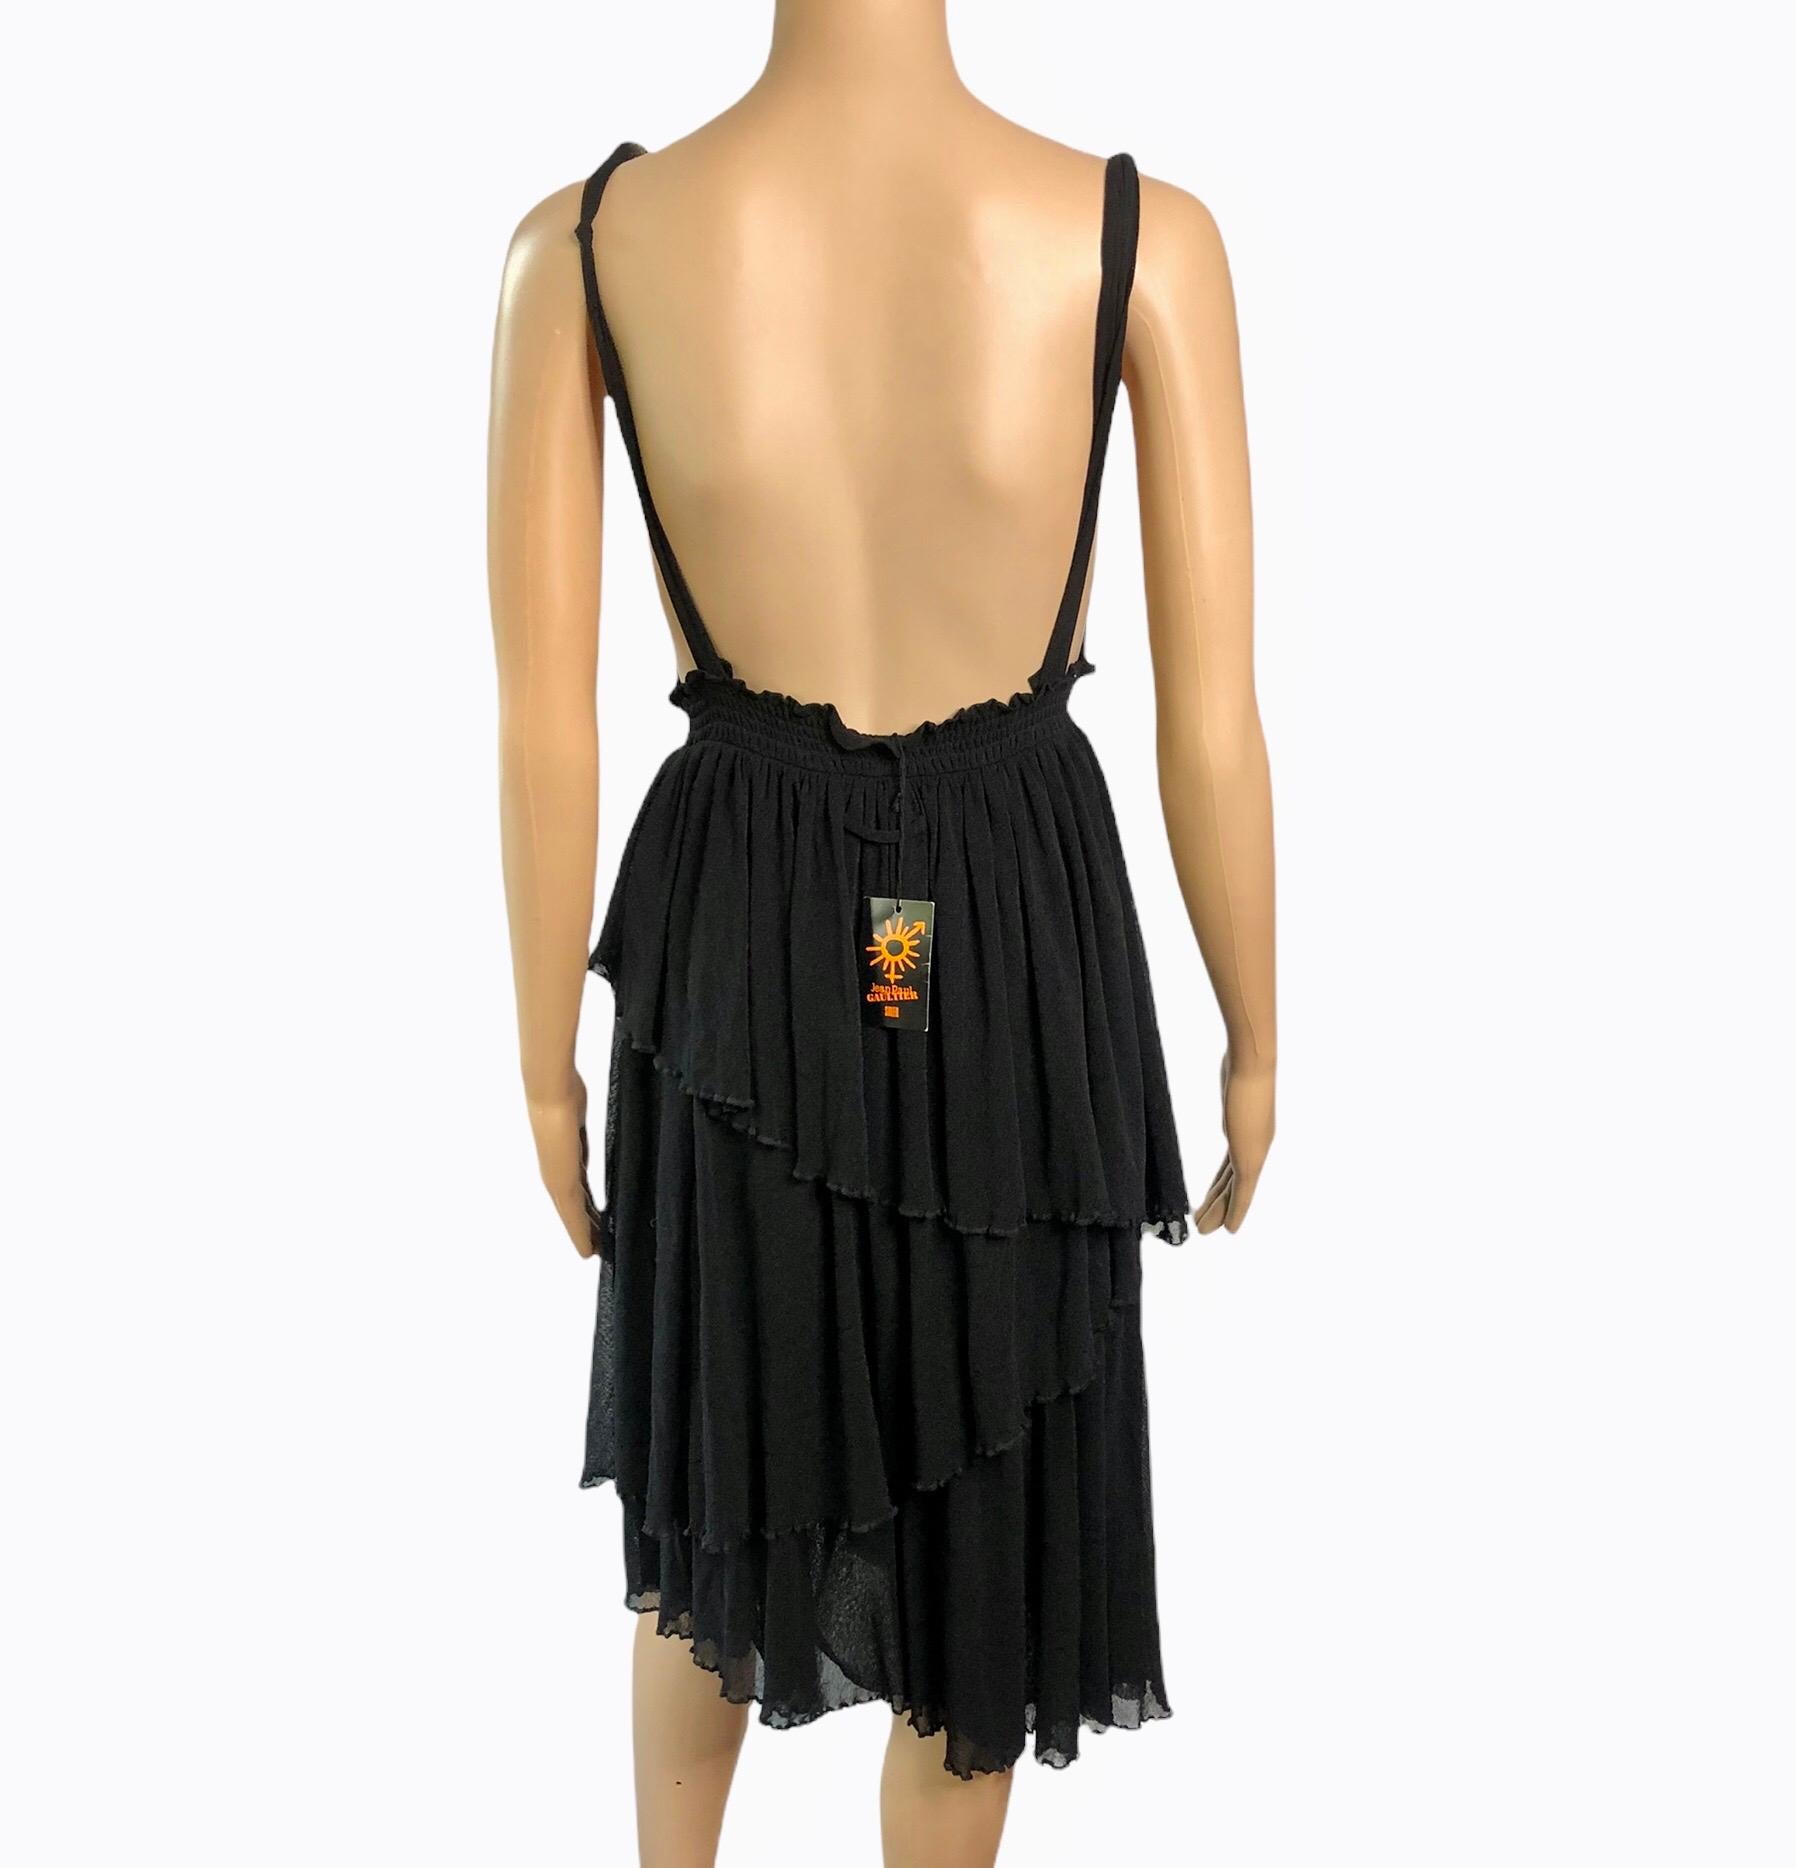 Jean Paul Gaultier Soleil Unworn Backless Semi Sheer Mesh Black Dress Size S